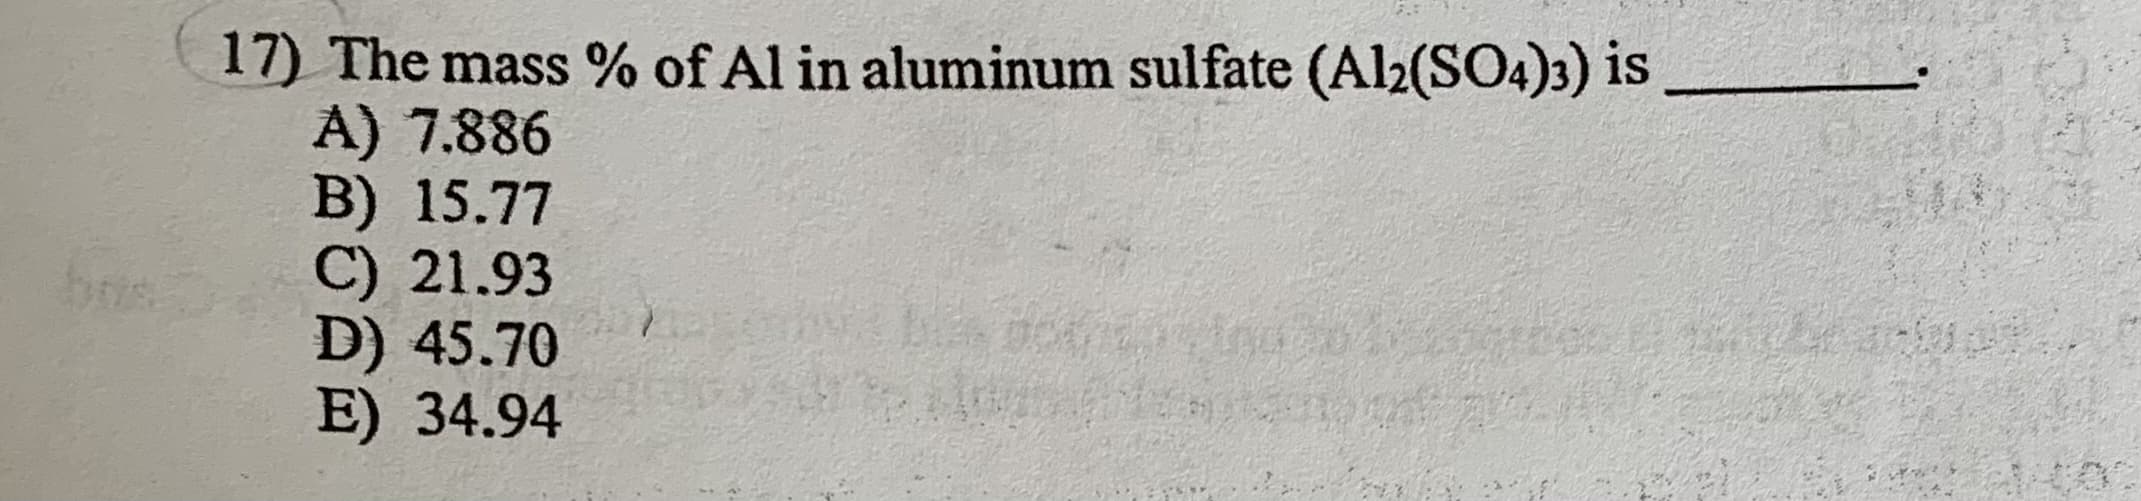 17) The mass % of Al in aluminum sulfate (Al2(SO4)3) is
A) 7.886
B) 15.77
C) 21.93
D) 45.70
E) 34.94
